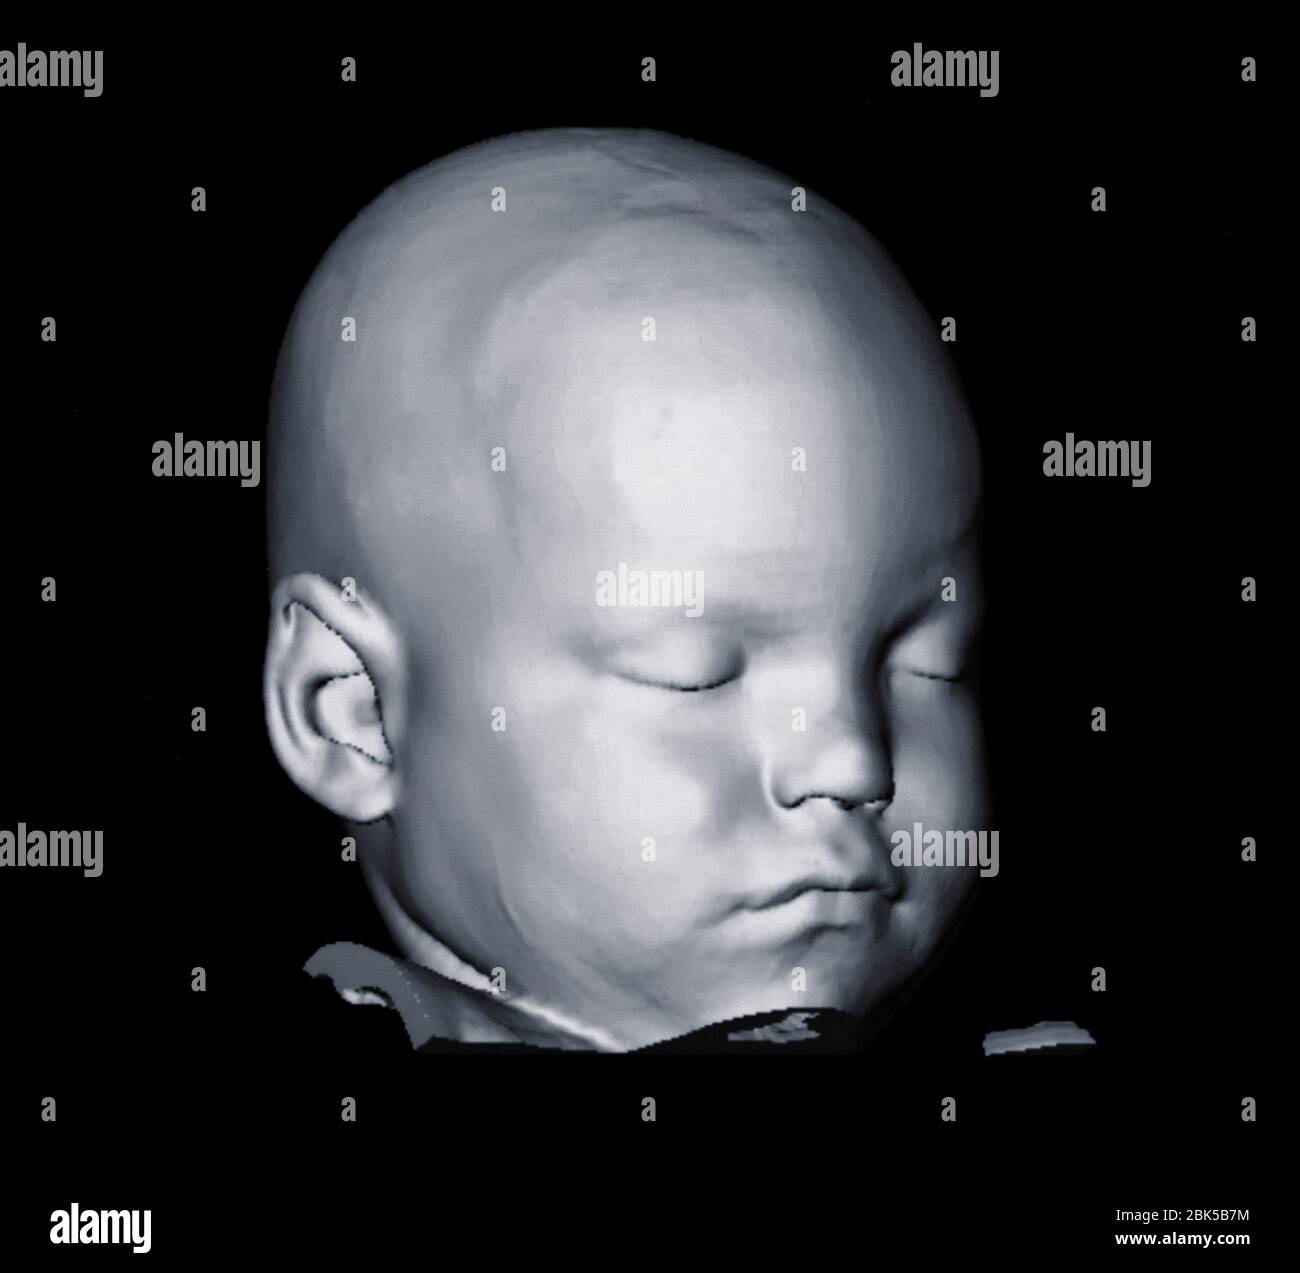 Immagine della testa del bambino, tomografia computerizzata (TC). Foto Stock